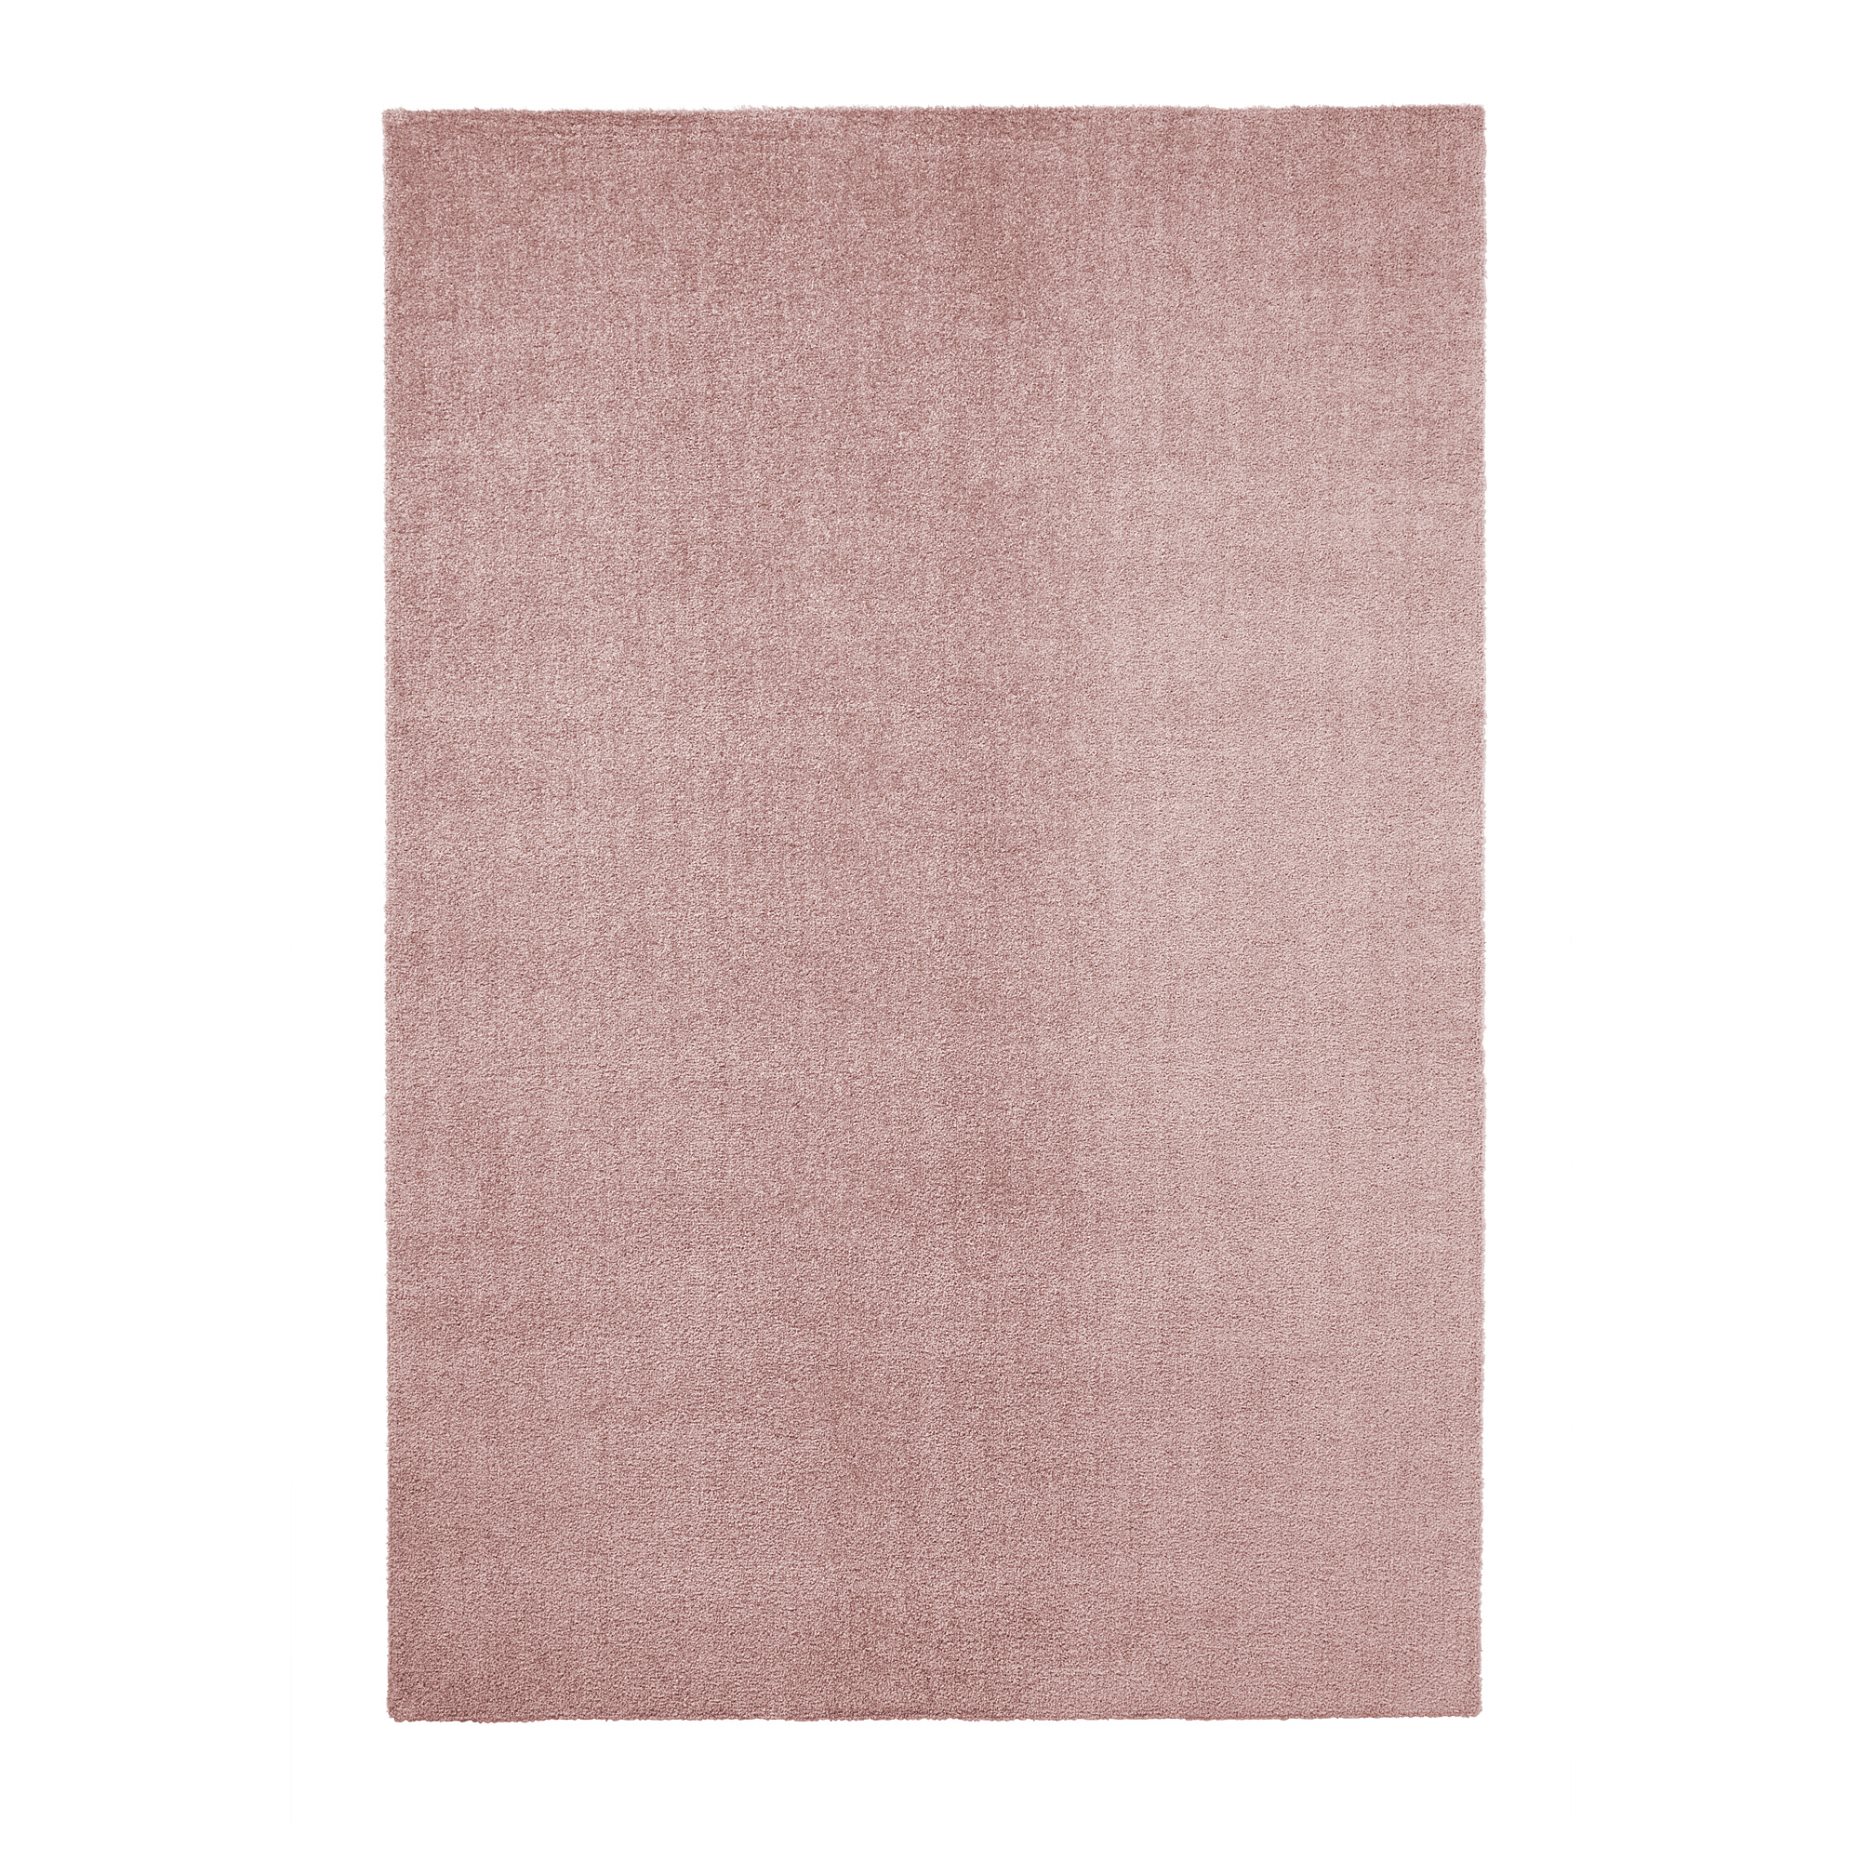 KNARDRUP, χαλί χαμηλό πέλος, 160x230 cm, 604.926.17